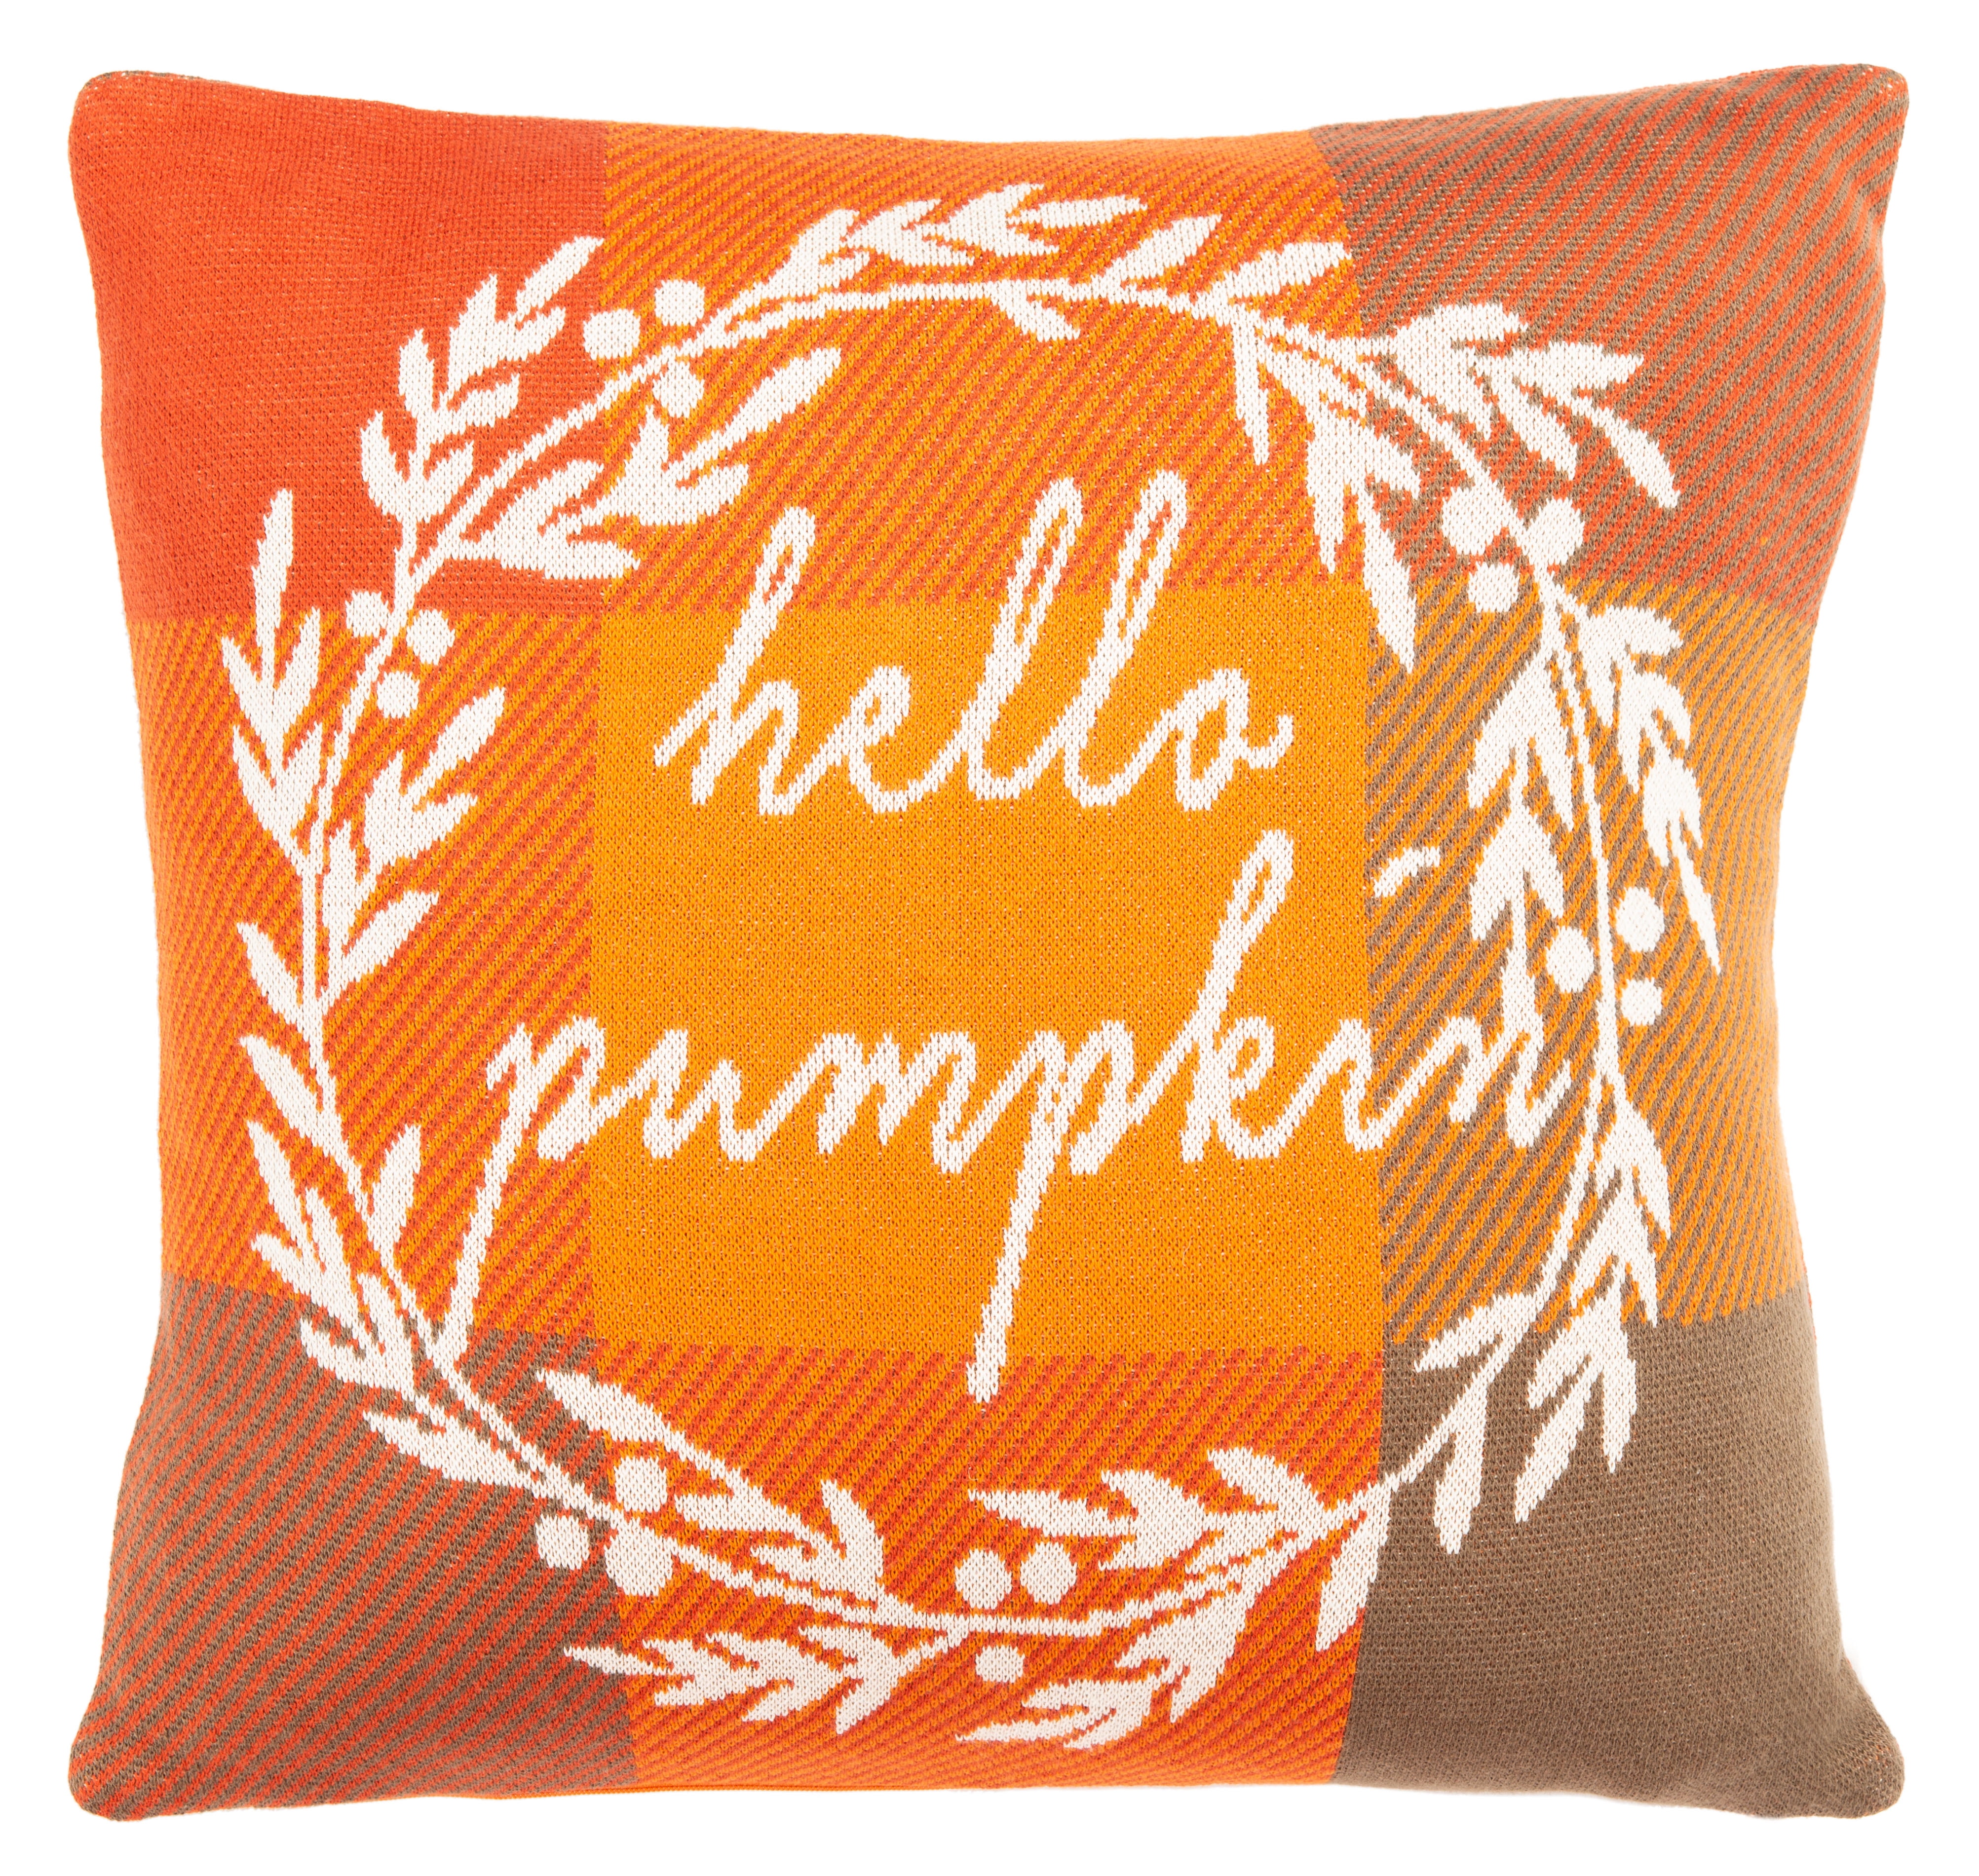 Safavieh Hello Pumpkin Pillow Orange, Size: 18 inch x 18 inch